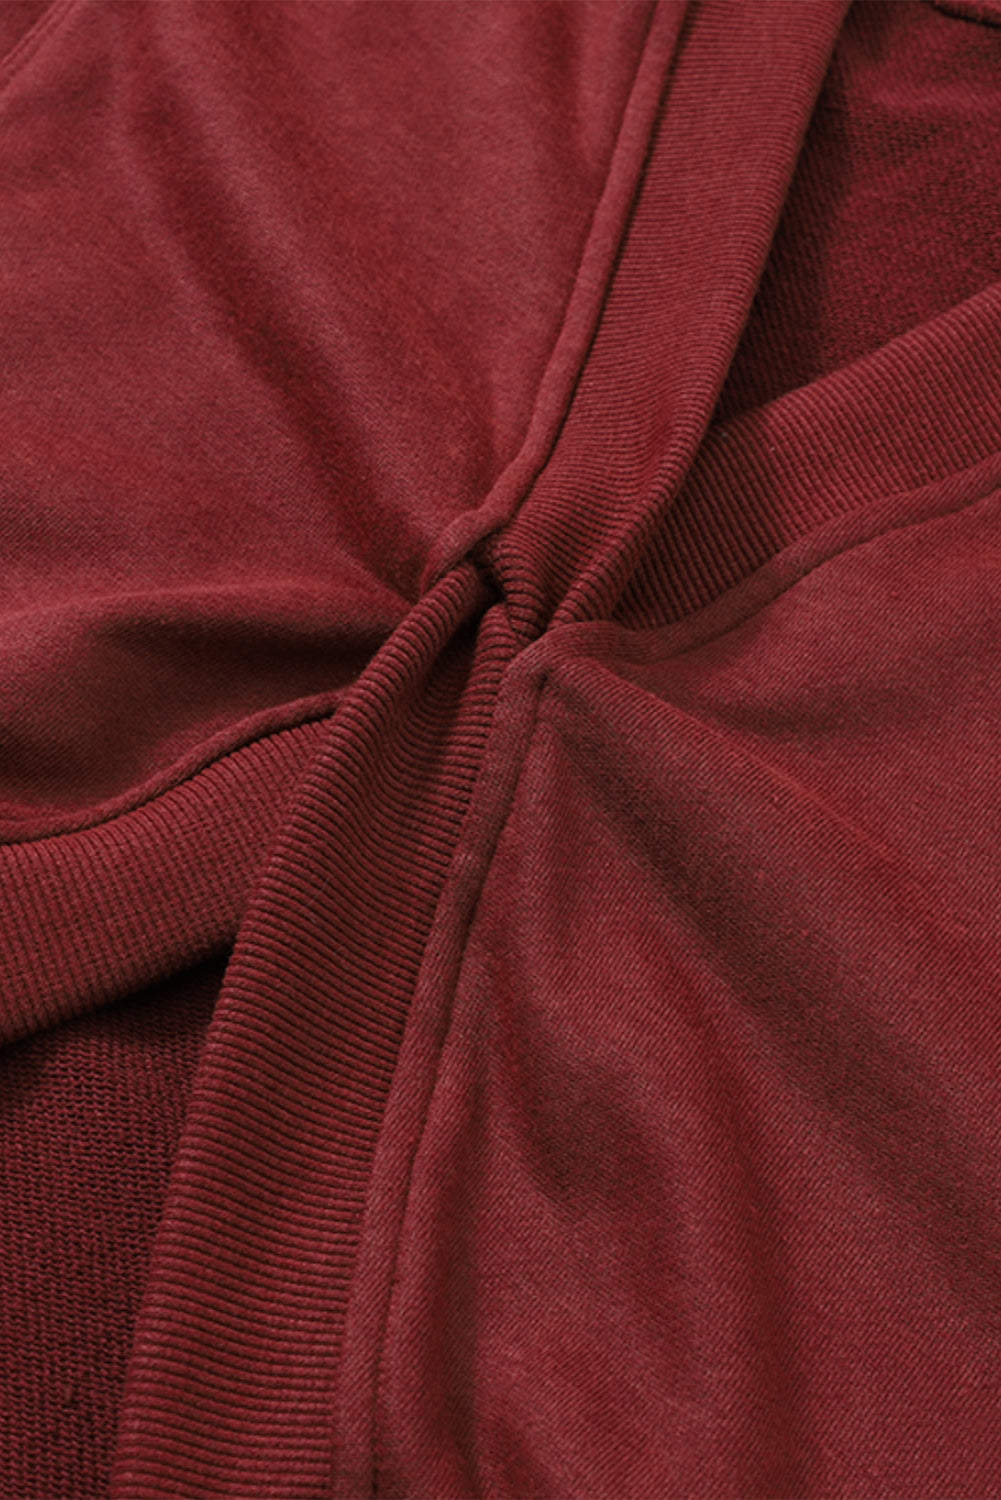 Vatrenocrvena jaka majica s otvorenim leđima i otvorenim šavovima